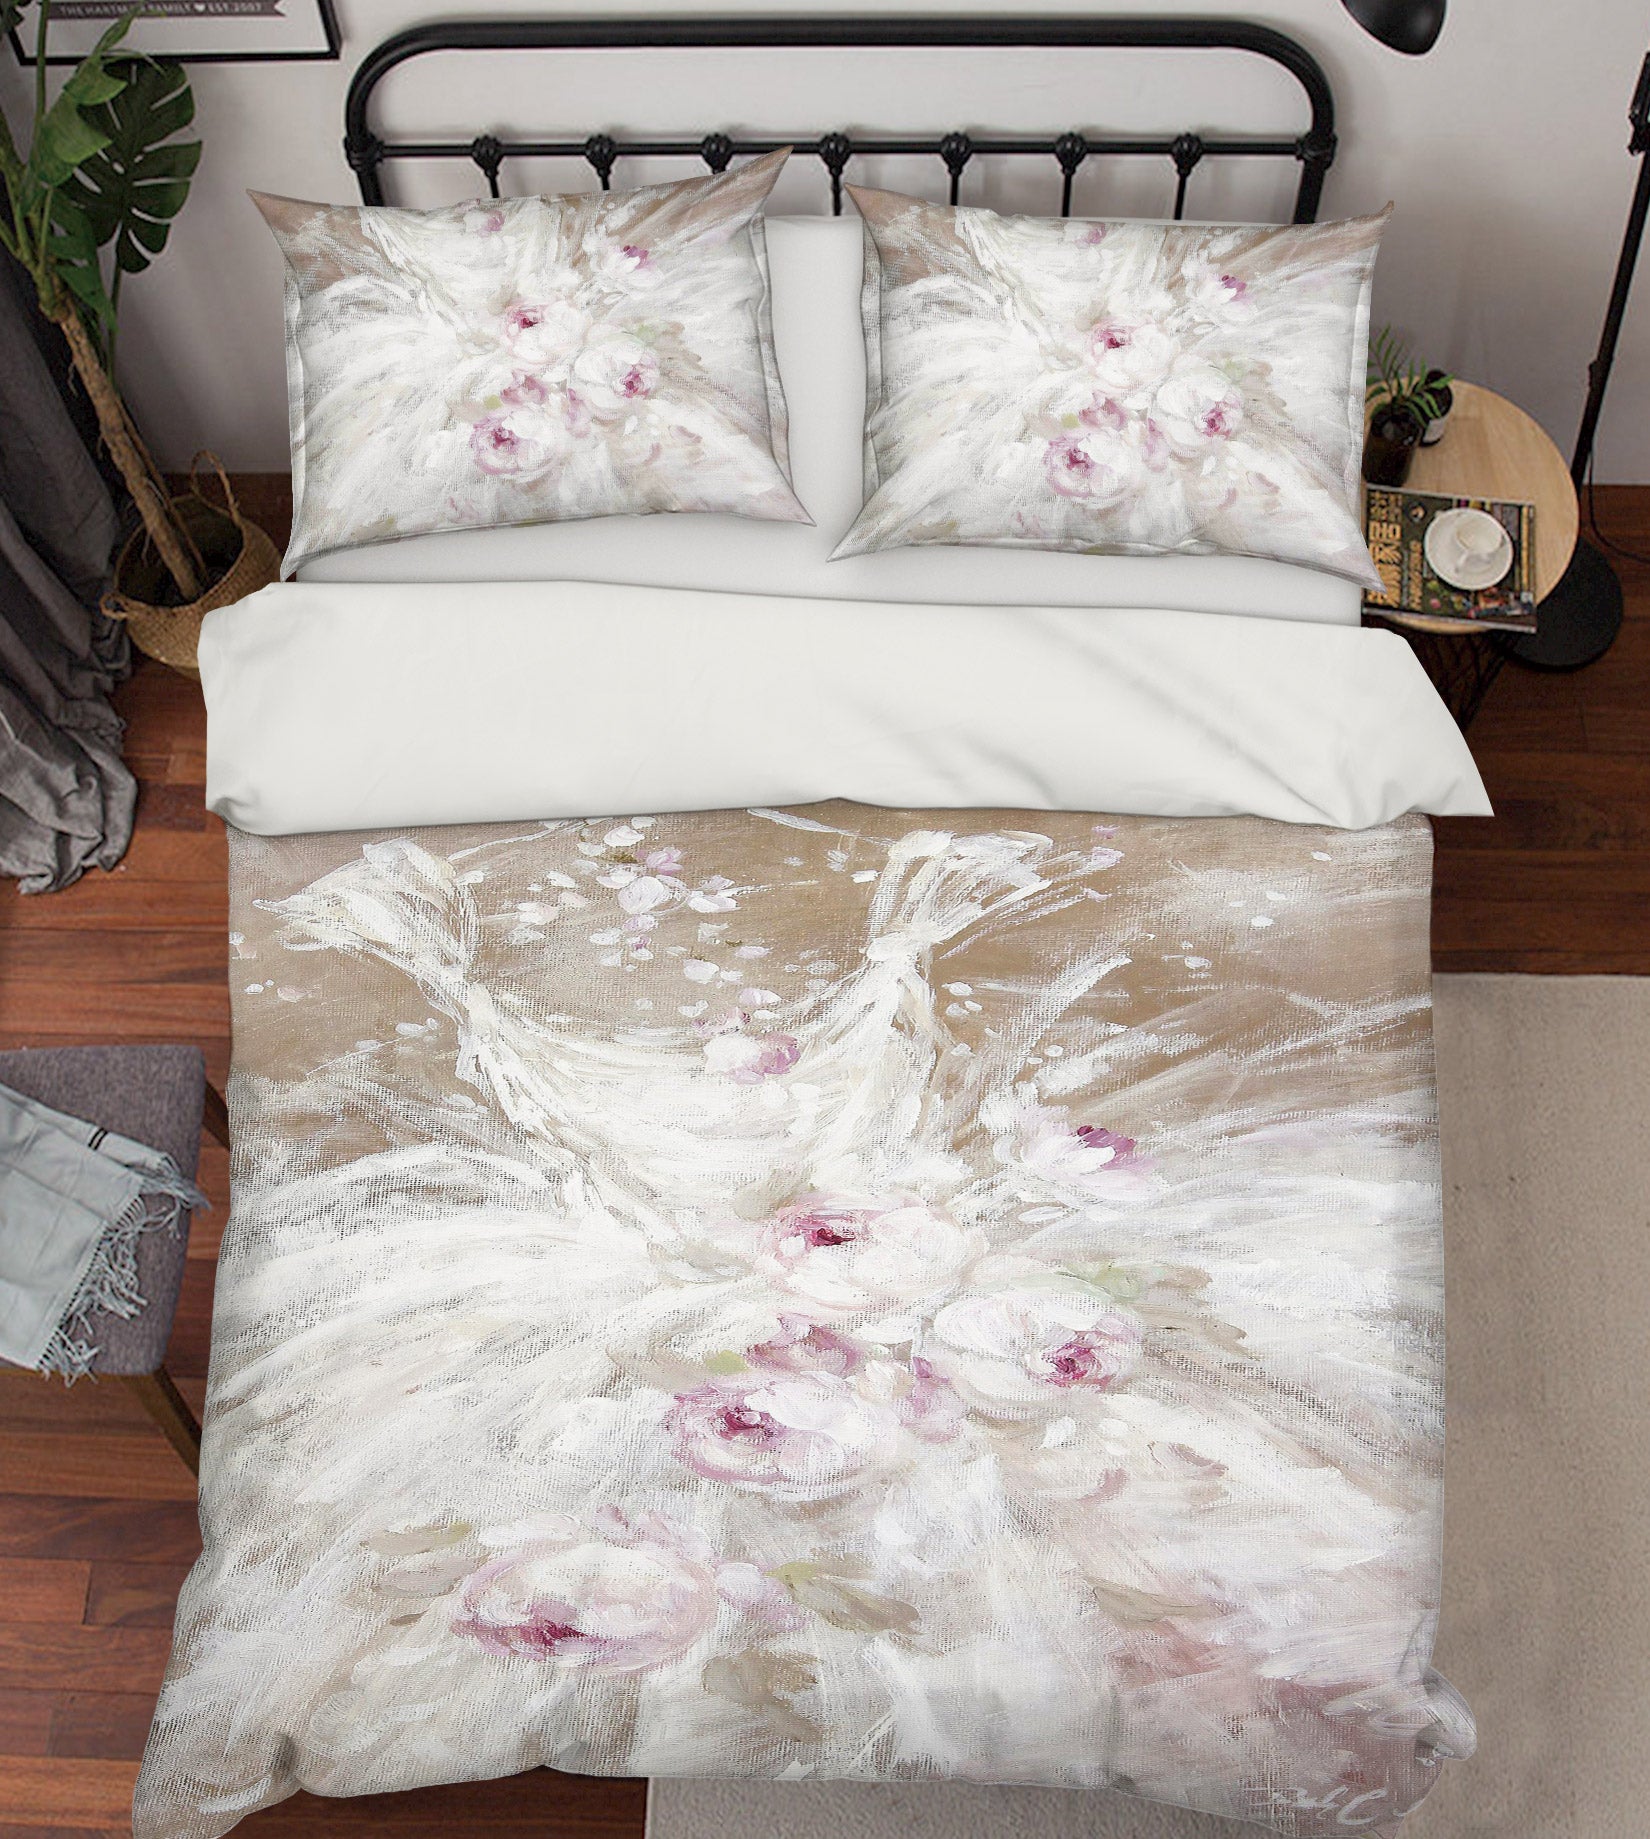 3D White Gauze Skirt Flowers 2150 Debi Coules Bedding Bed Pillowcases Quilt